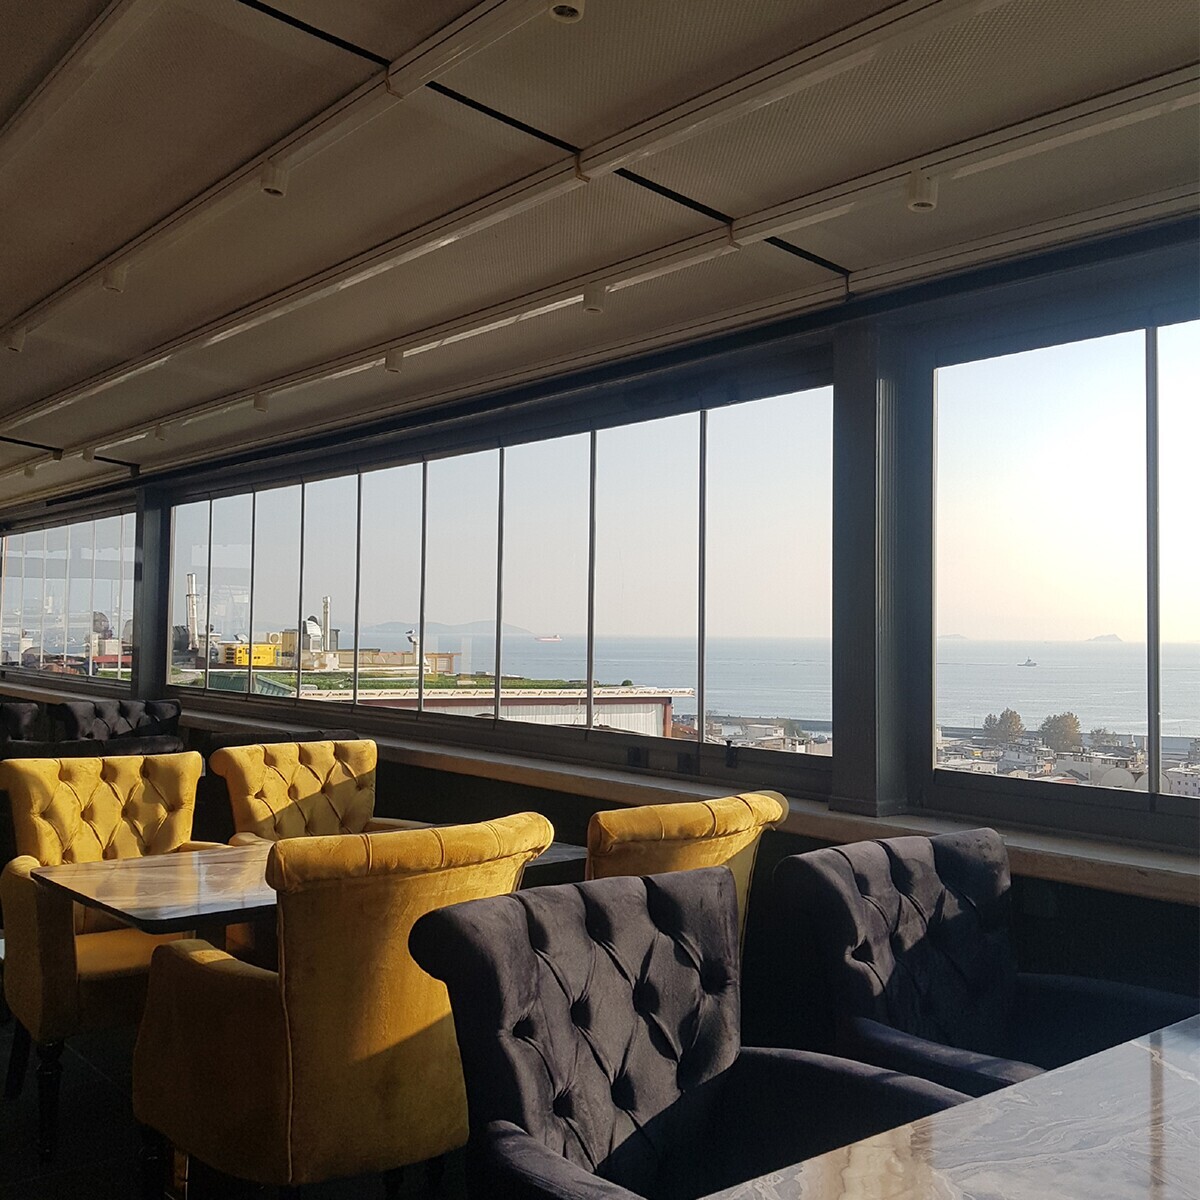 360 Derece Deniz ve İstanbul Manzarasına Sahip Fatih Selenay Hotel’de Açık Büfe ya da Serpme Kahvaltı